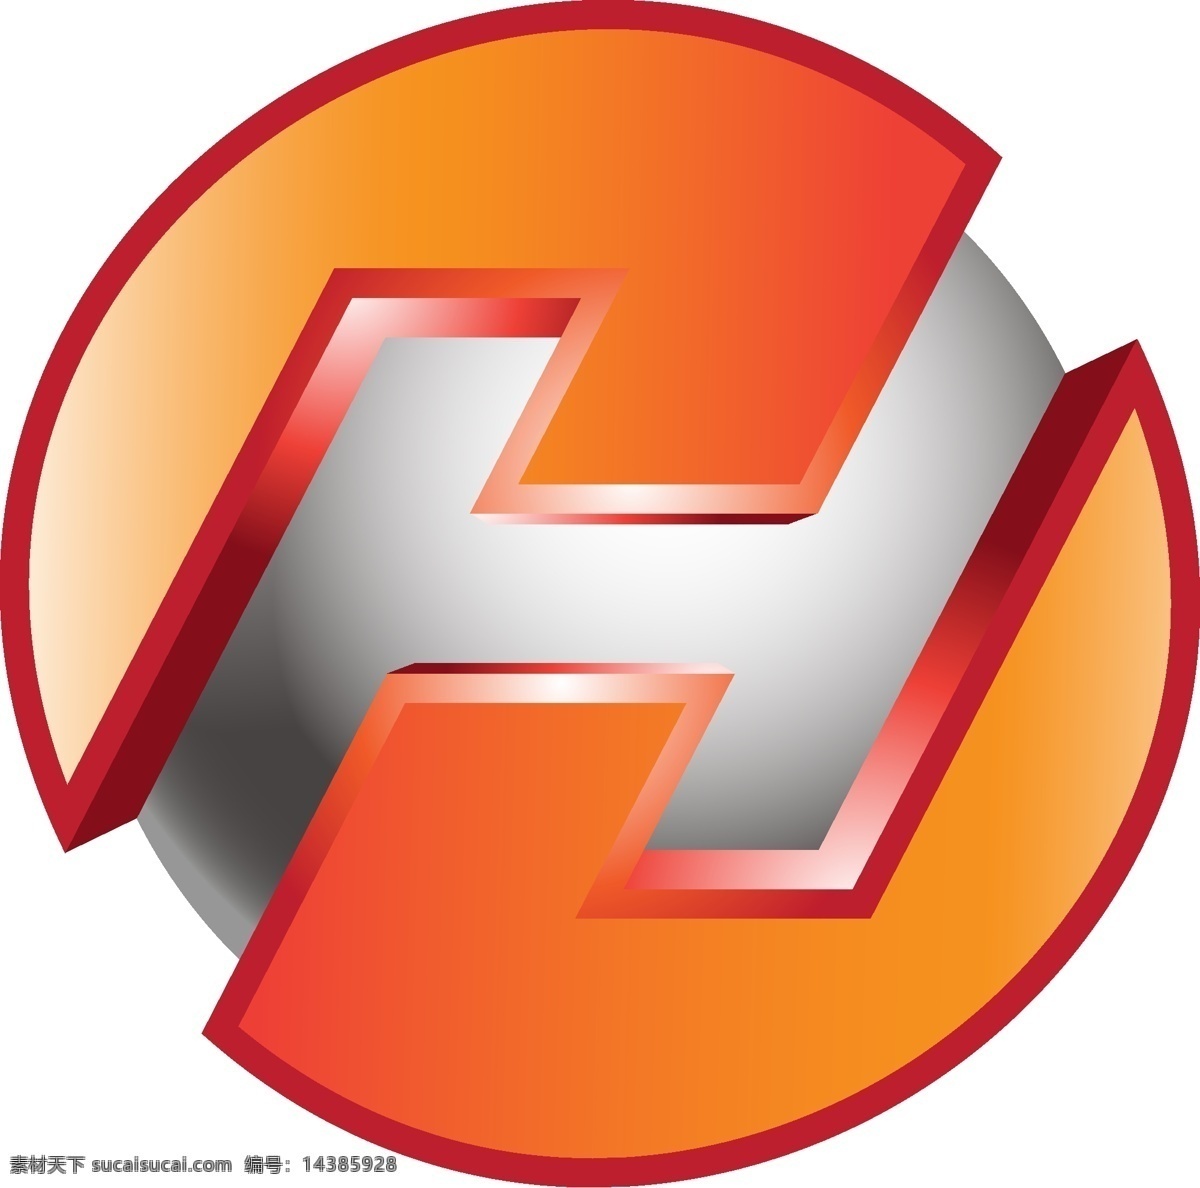 互联网 游戏类 用途 标识 logo 科技 标志 创意 广告 企业 科技logo 领域 公司 简约 游戏logo 游戏